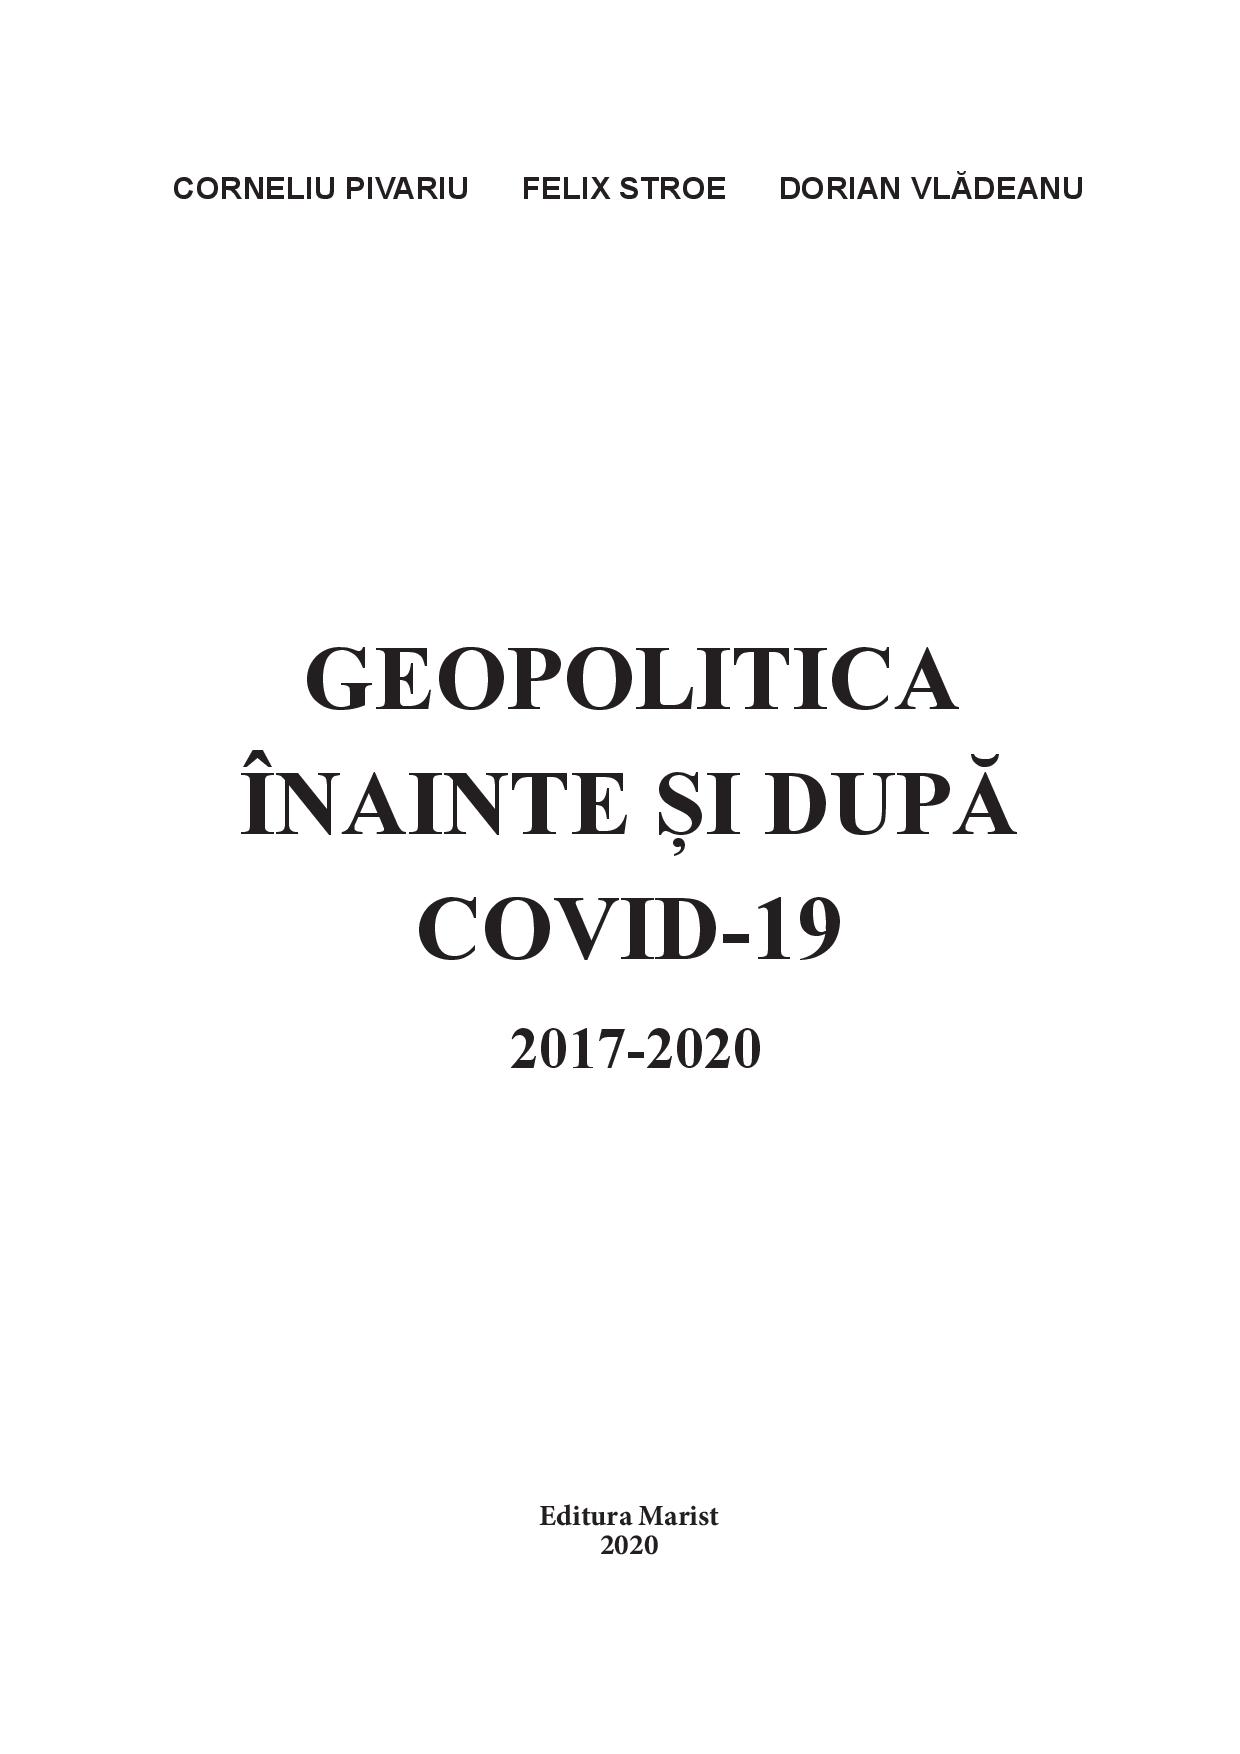 Geopolitica inainte si dupa Covid-19, 2017-2020 | Corneliu Pivariu, Felix Stroe, Dorian Vladeanu